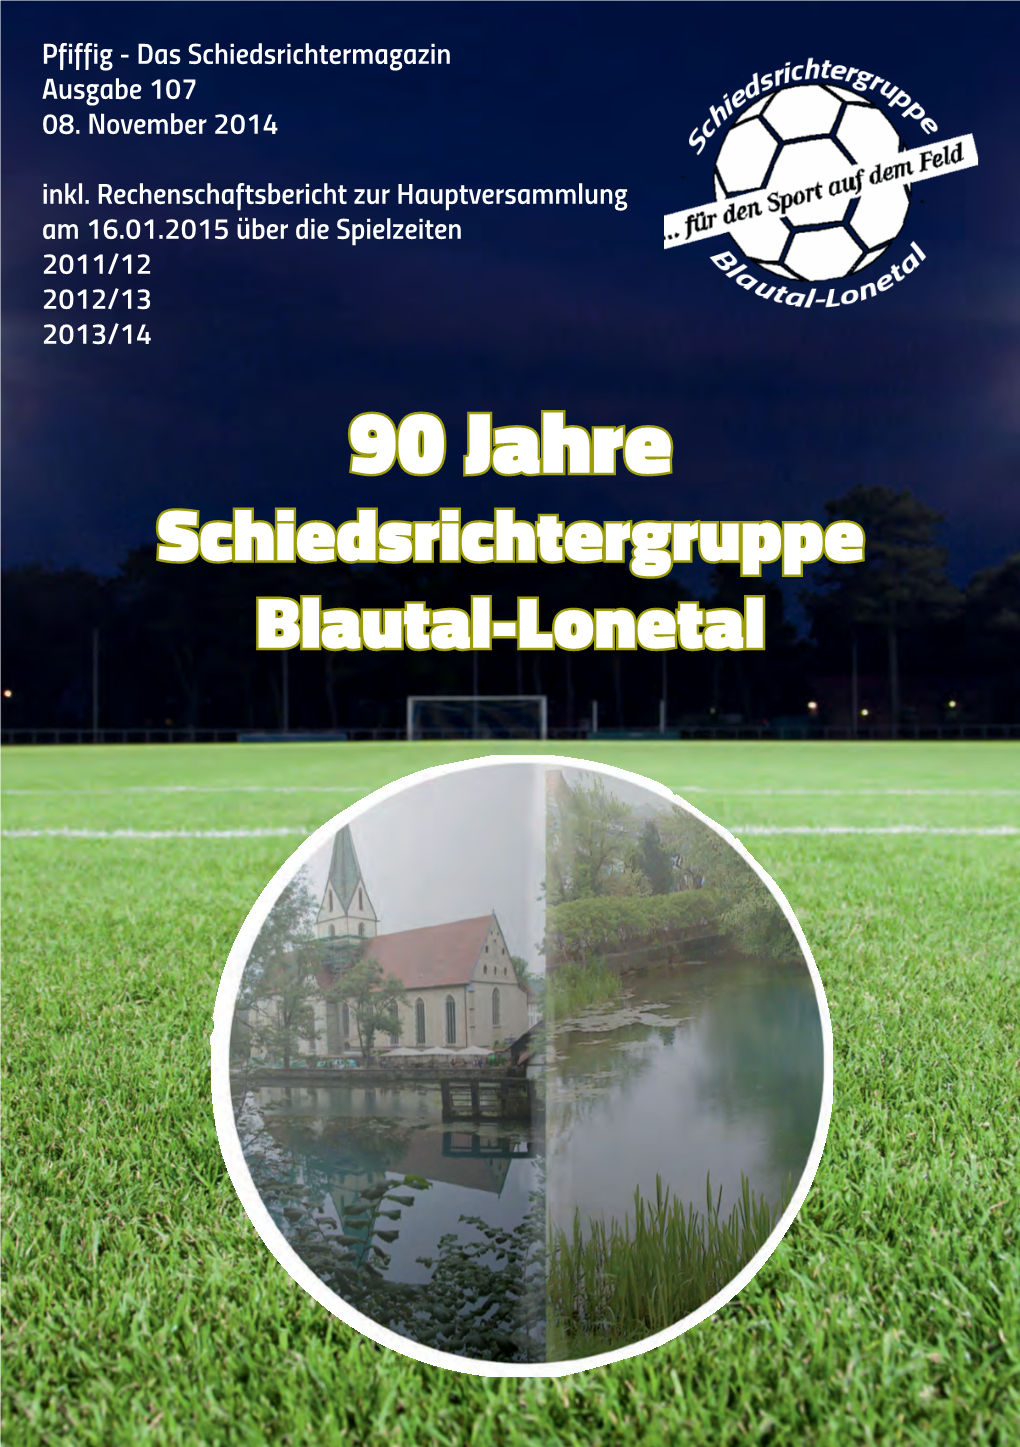 90 Jahre Schiedsrichtergruppe Blautal-Lonetal Jubiläumsveranstaltung Zum 90